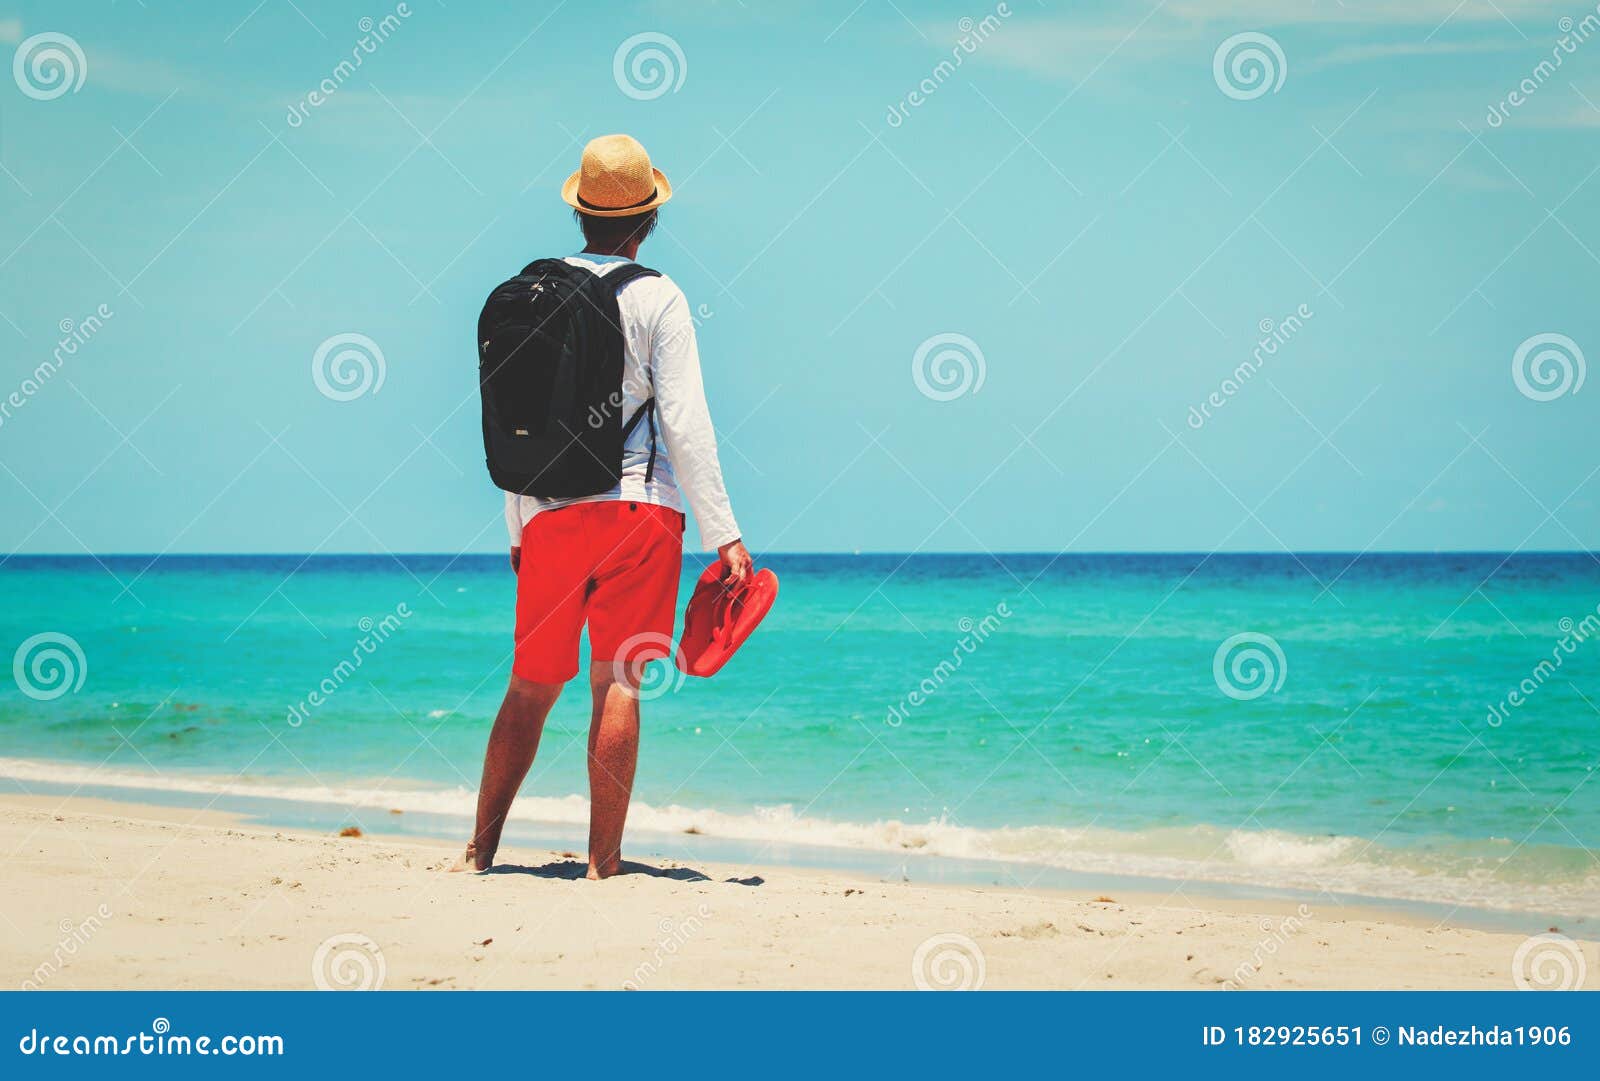 Hombre De Trabajo Remoto Con Mochila Y Laptop En La Playa Imagen de archivo  - Imagen de arena, océano: 182925651